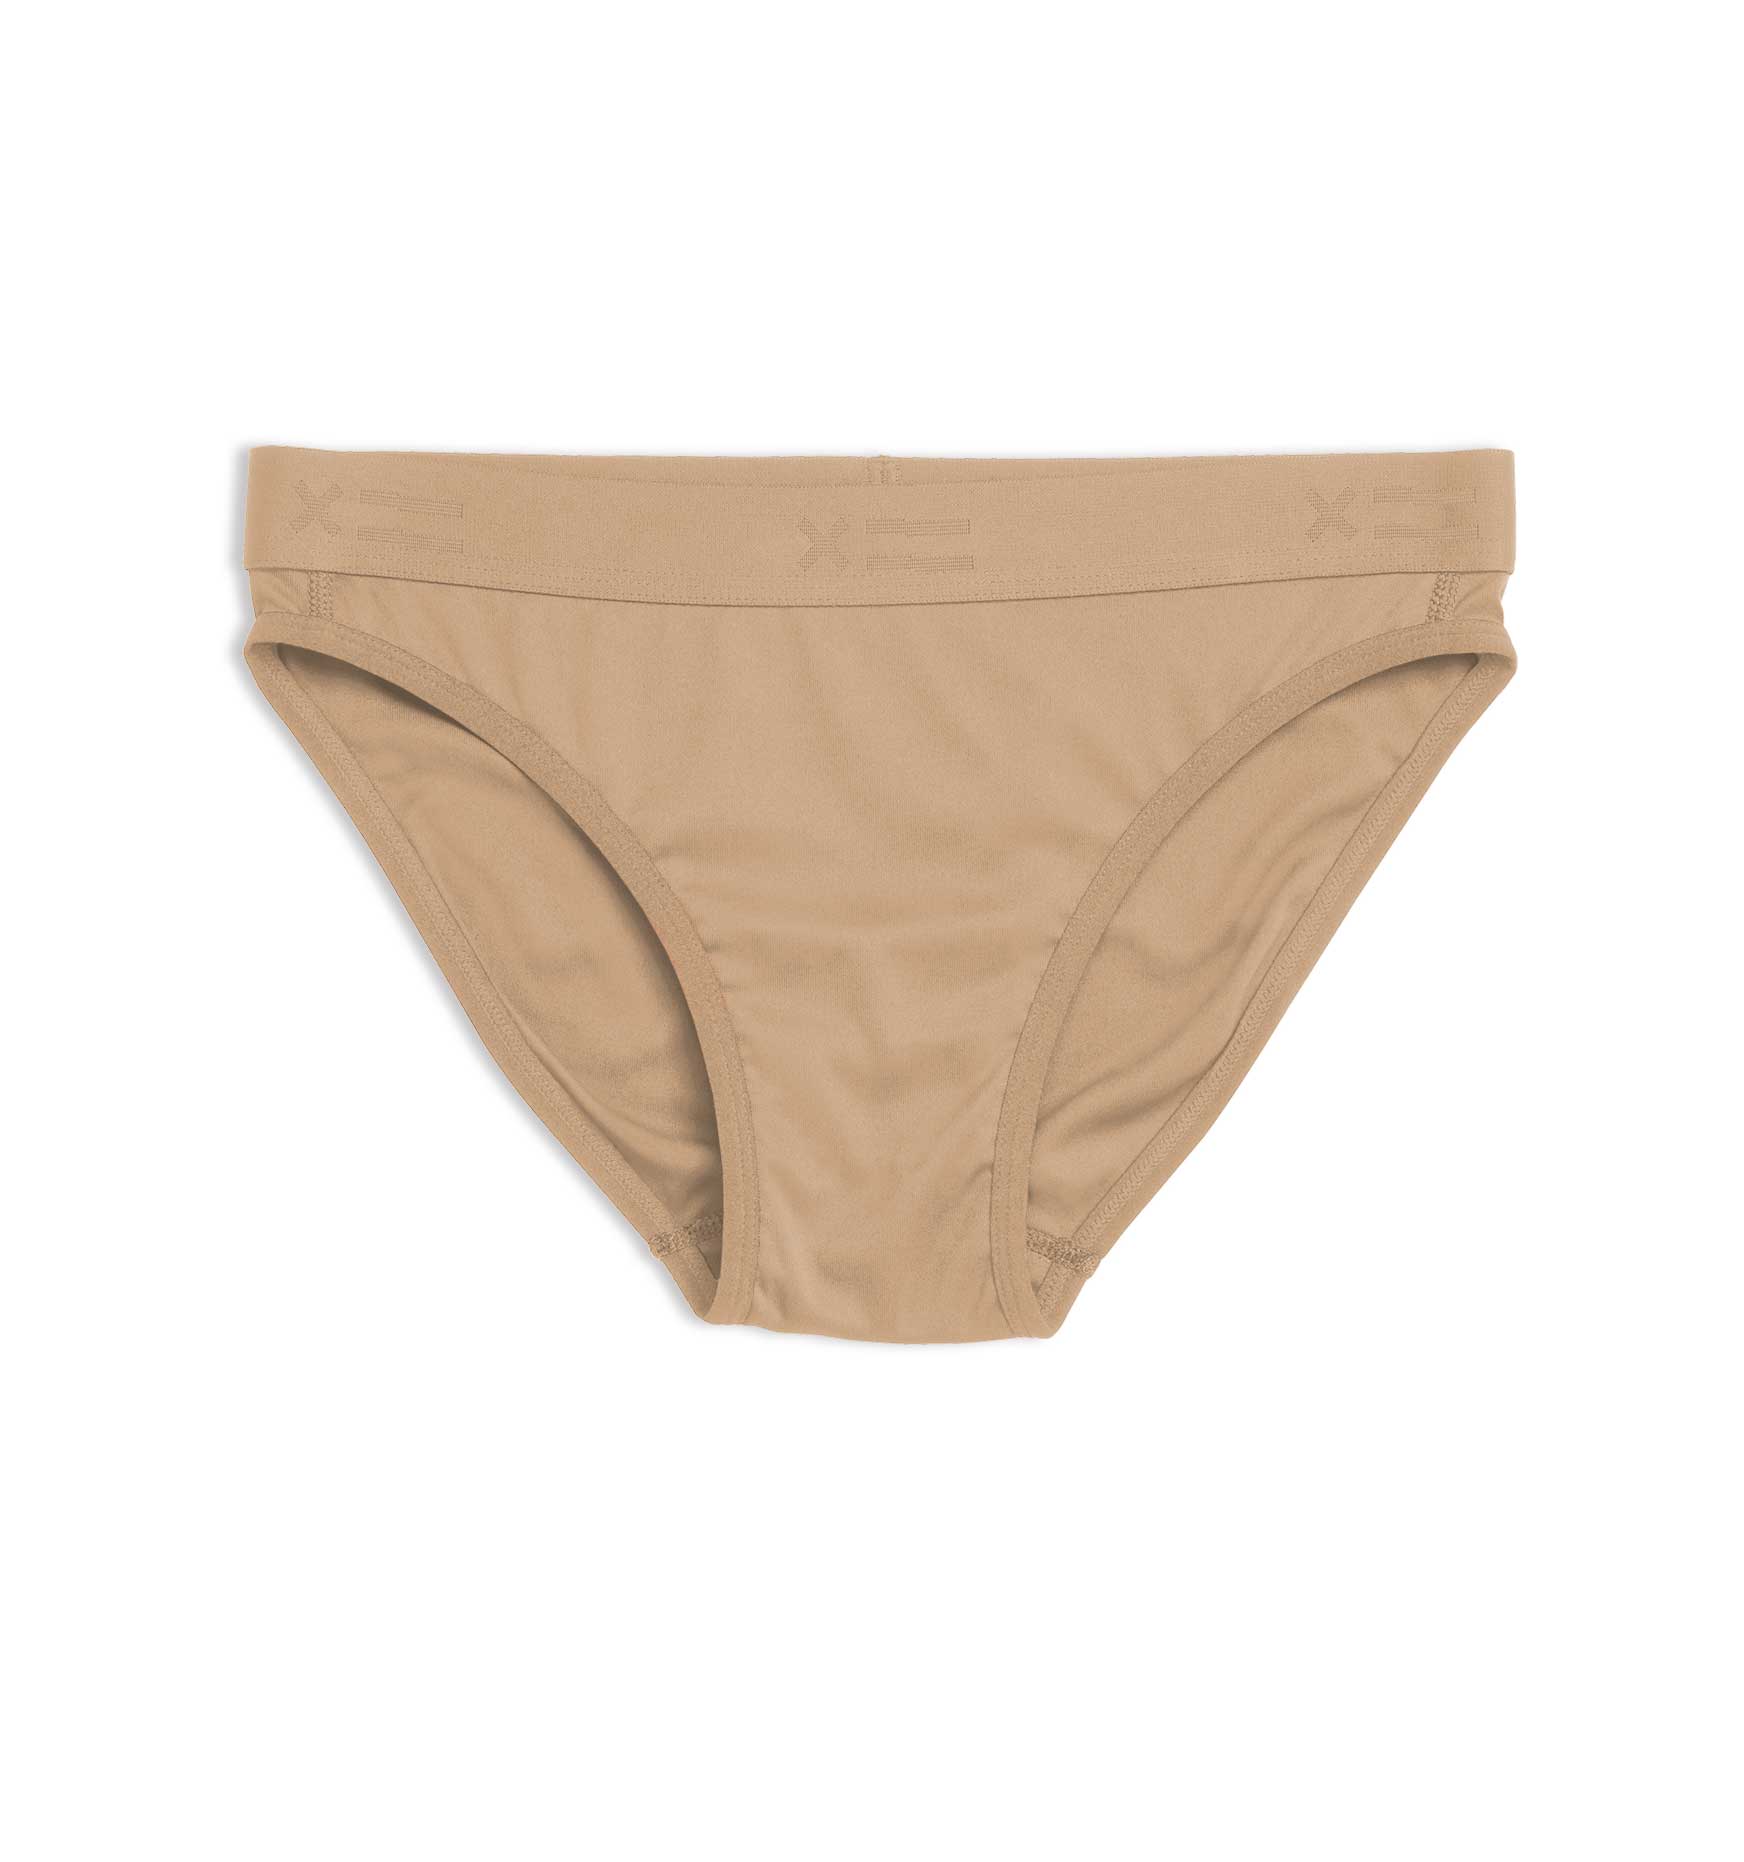 TomboyX Tucking Bikini - ShopStyle Panties